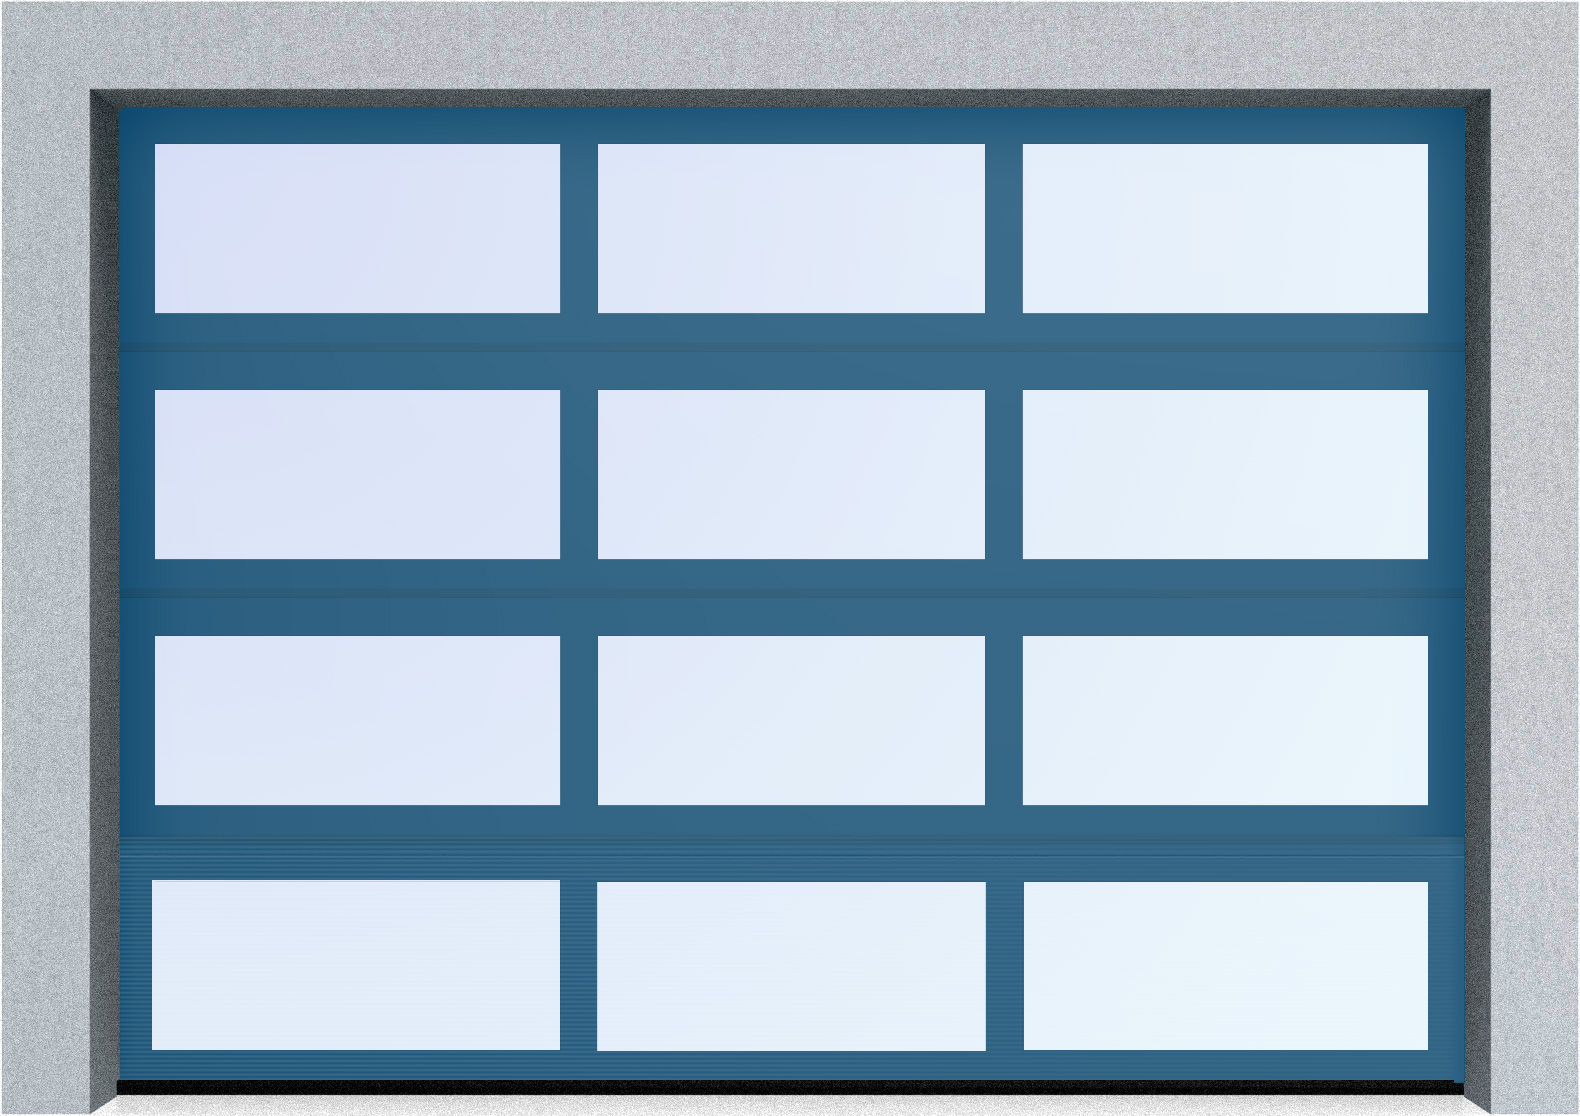  Секционные панорамные ворота серии AluTrend (АЛП) 5250х4500 нижняя панель стандартные цвета, фото 3 